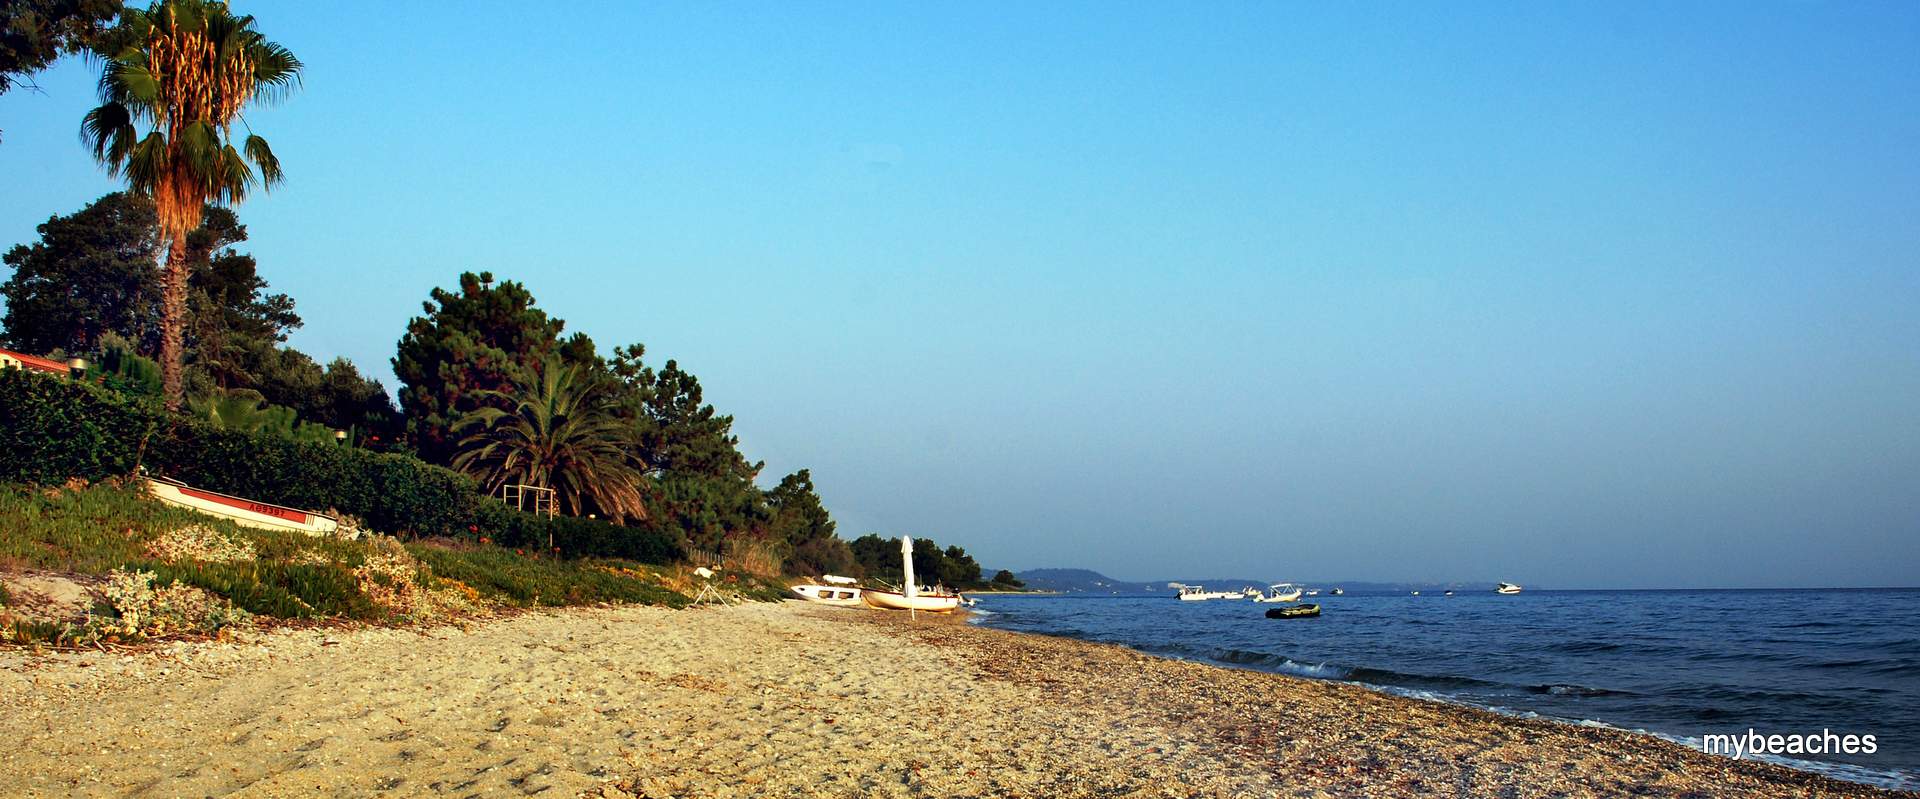 Avra beach, Kassandra, Halkidiki, Greece